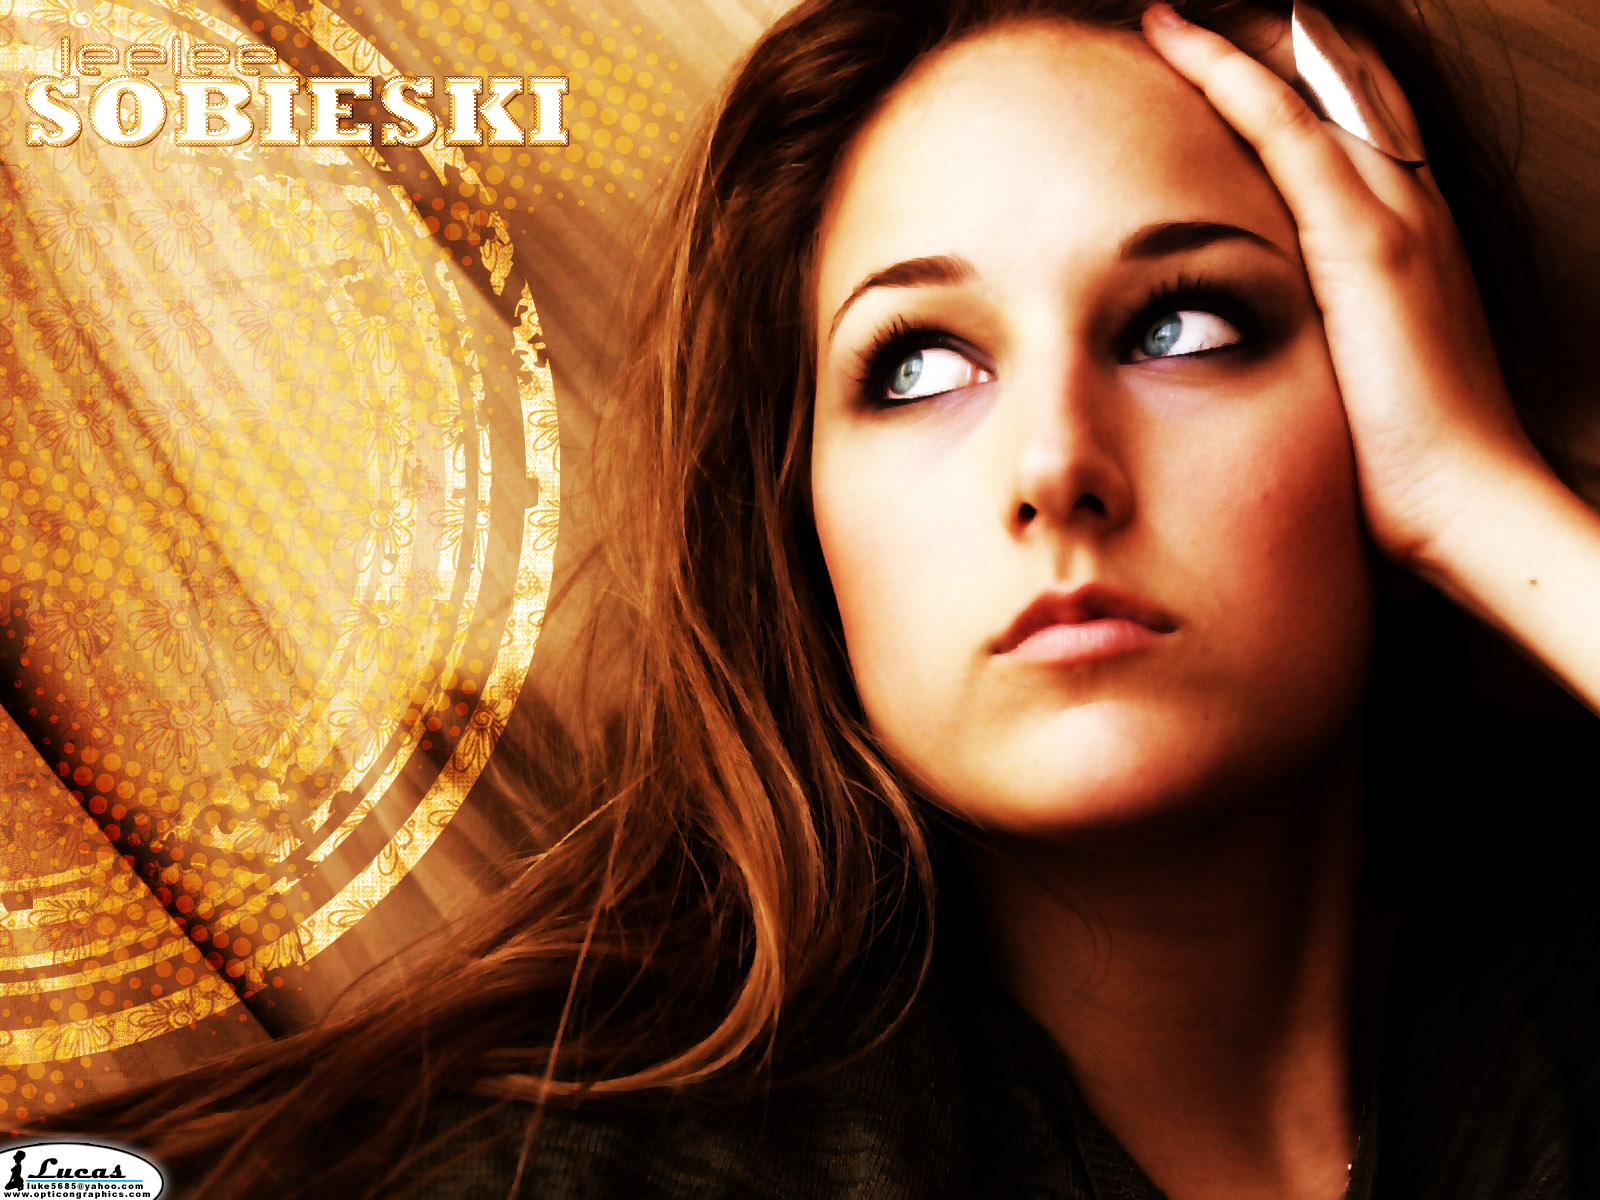 Celebrity Leelee Sobieski HD Wallpaper | Background Image